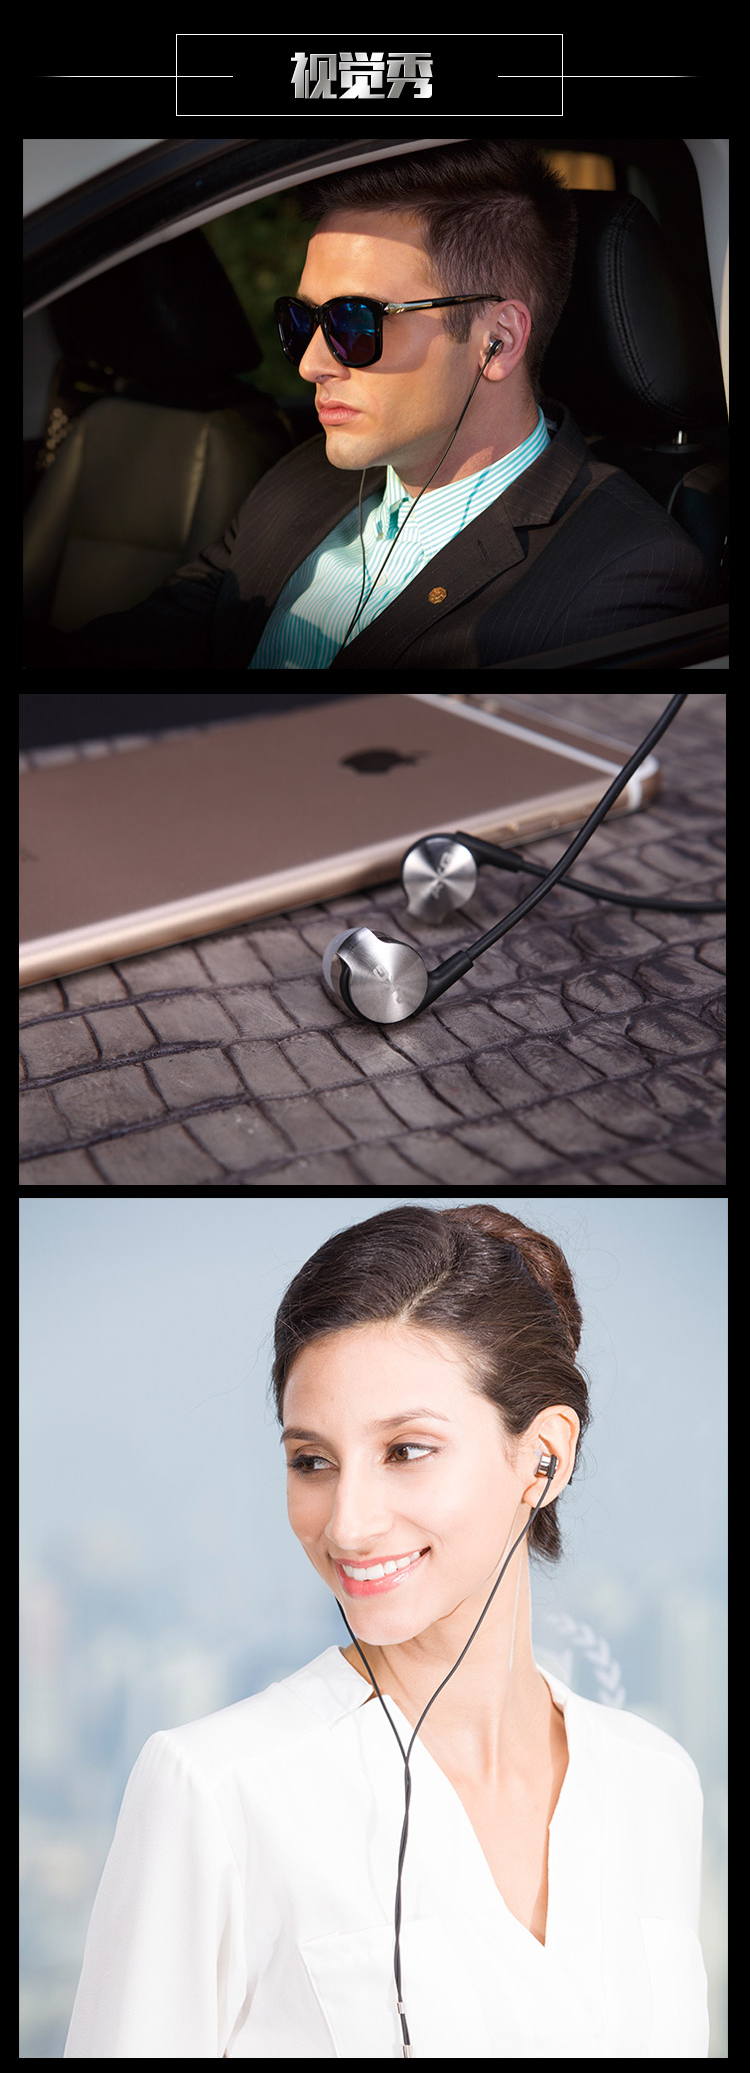 爱科技AKG K3003 入耳式耳机 圈铁混合 三单元 三频调节音乐耳机 HIFI手机 有线耳机